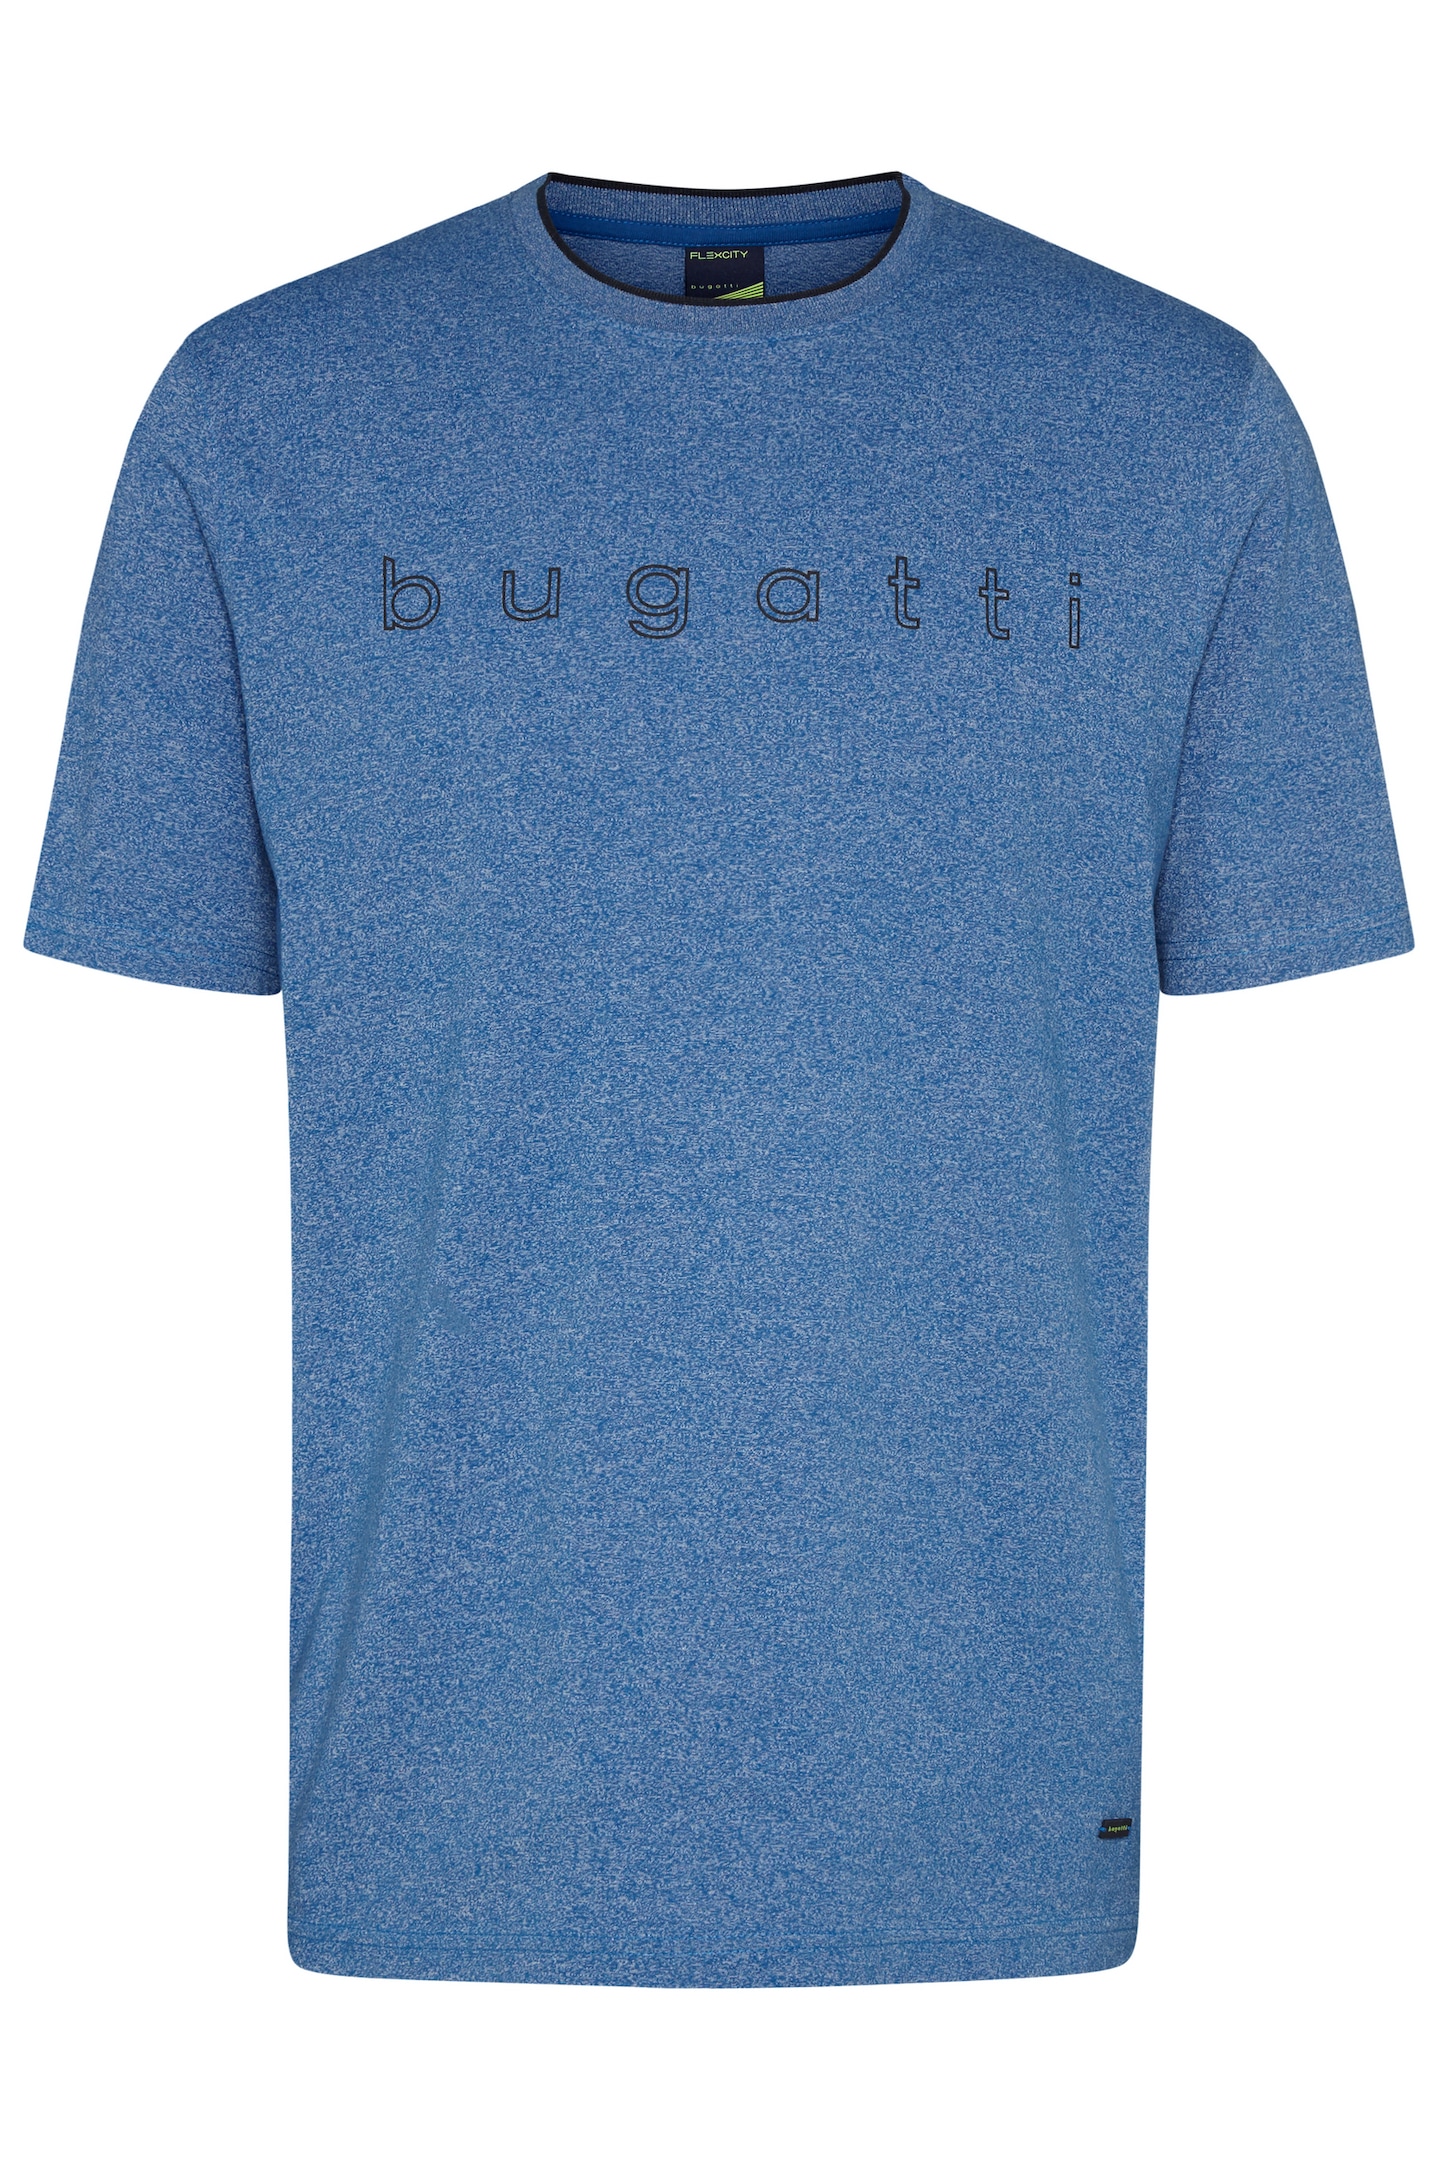 mit bugatti bugatti T-Shirt, Logo-Print online kaufen großem